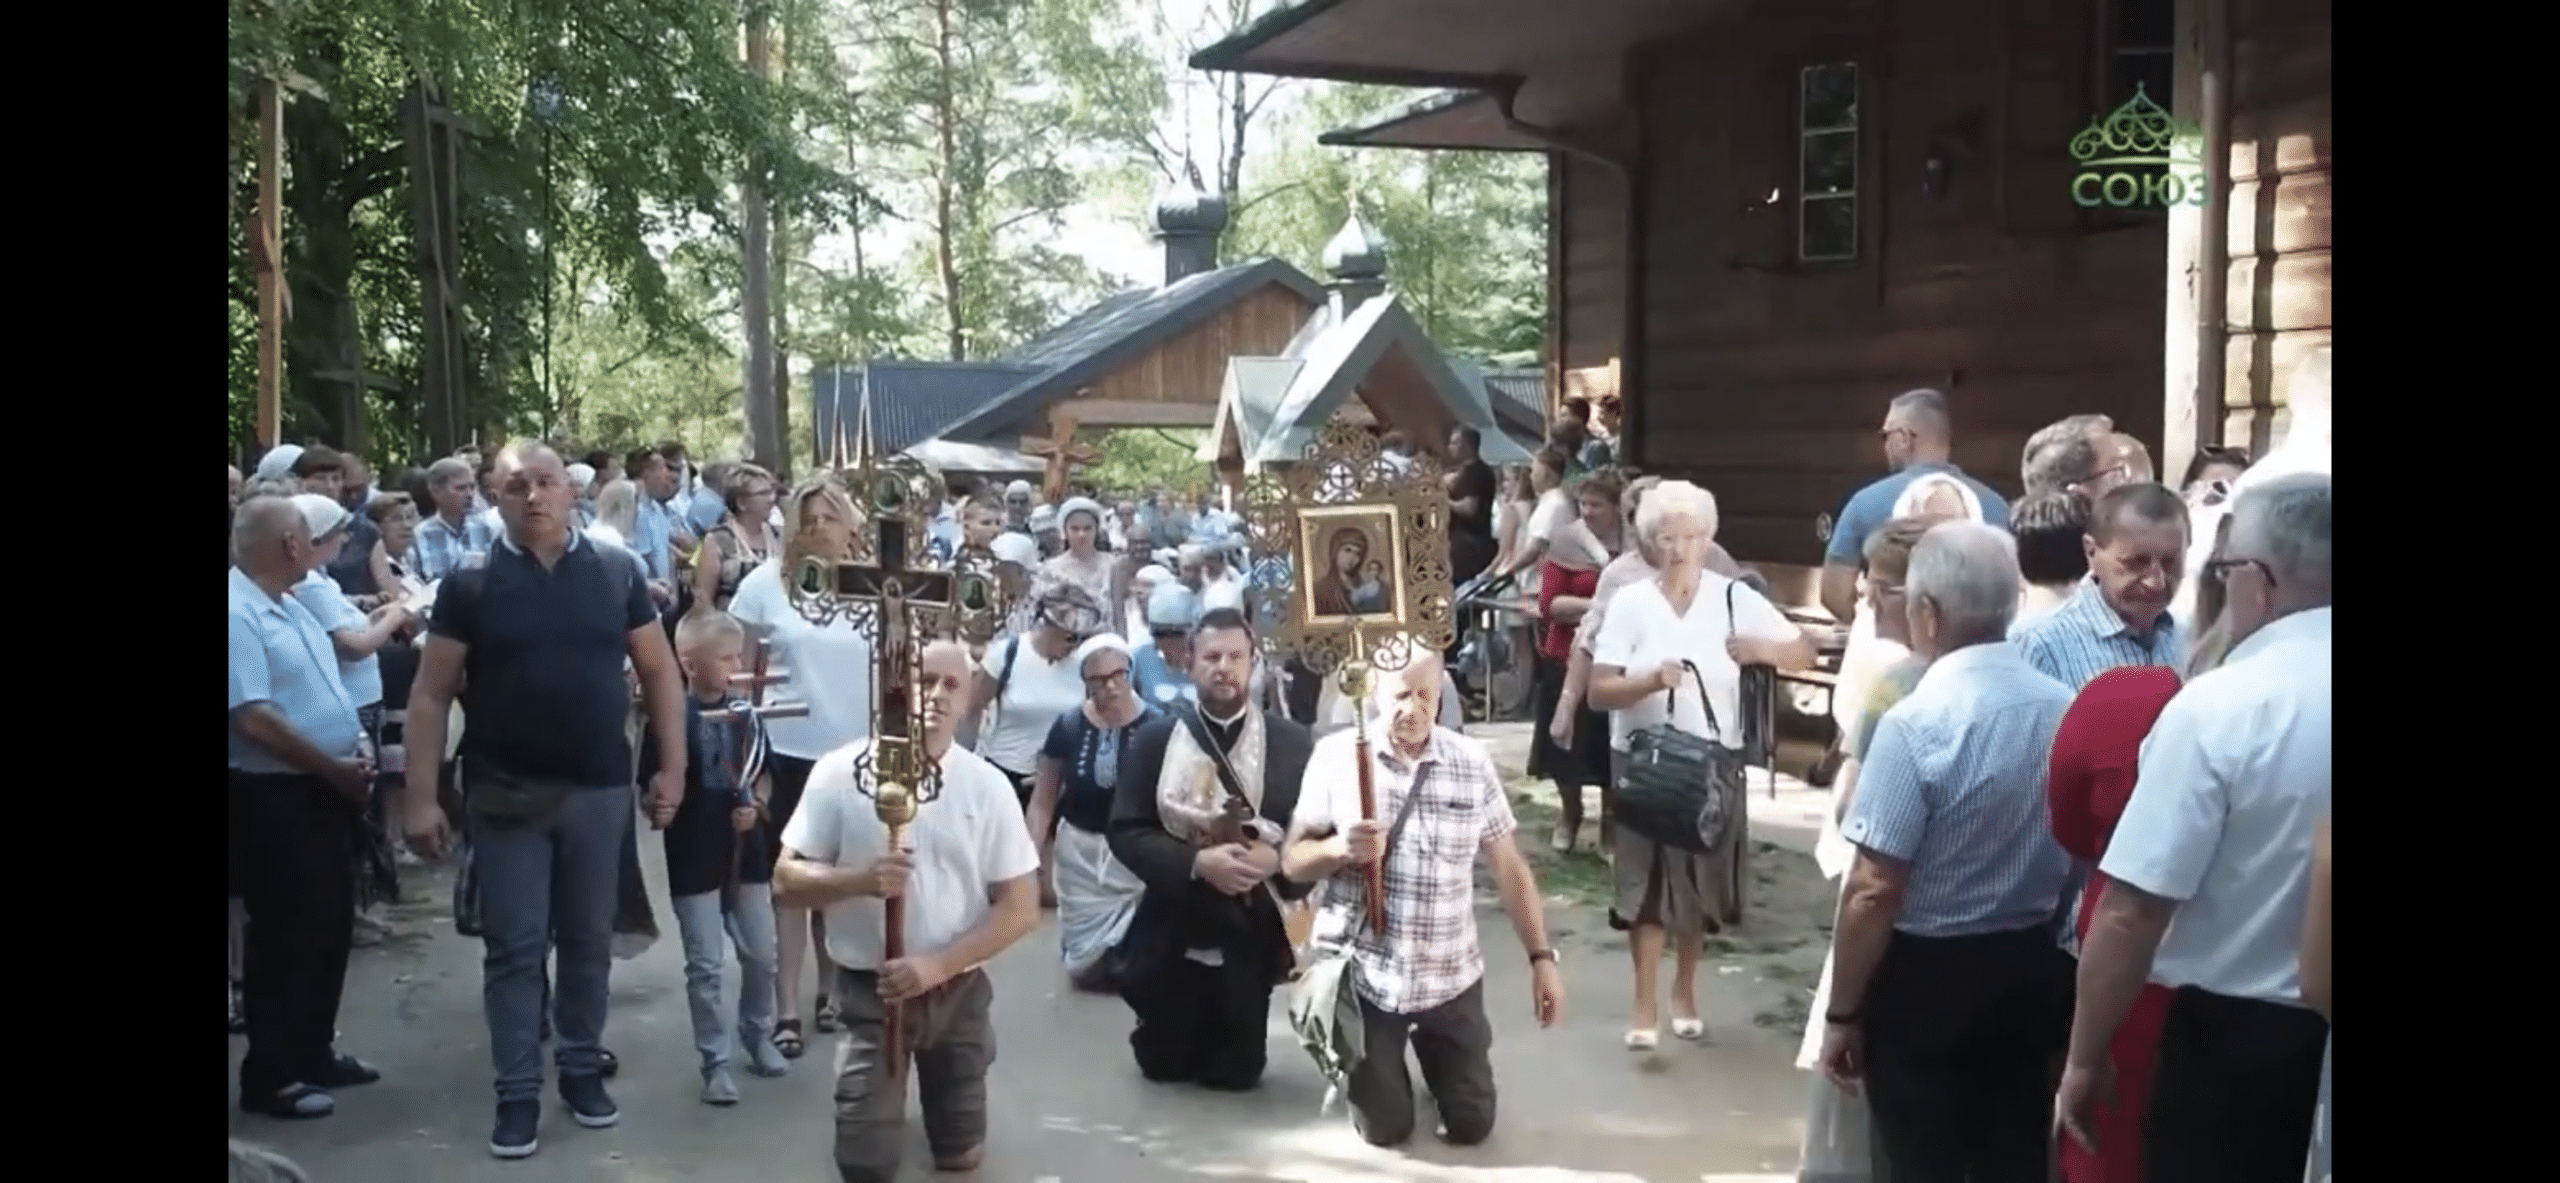 Des milliers de pèlerins sont venus au mont grabarka (pologne) pour la fête de la transfiguration 